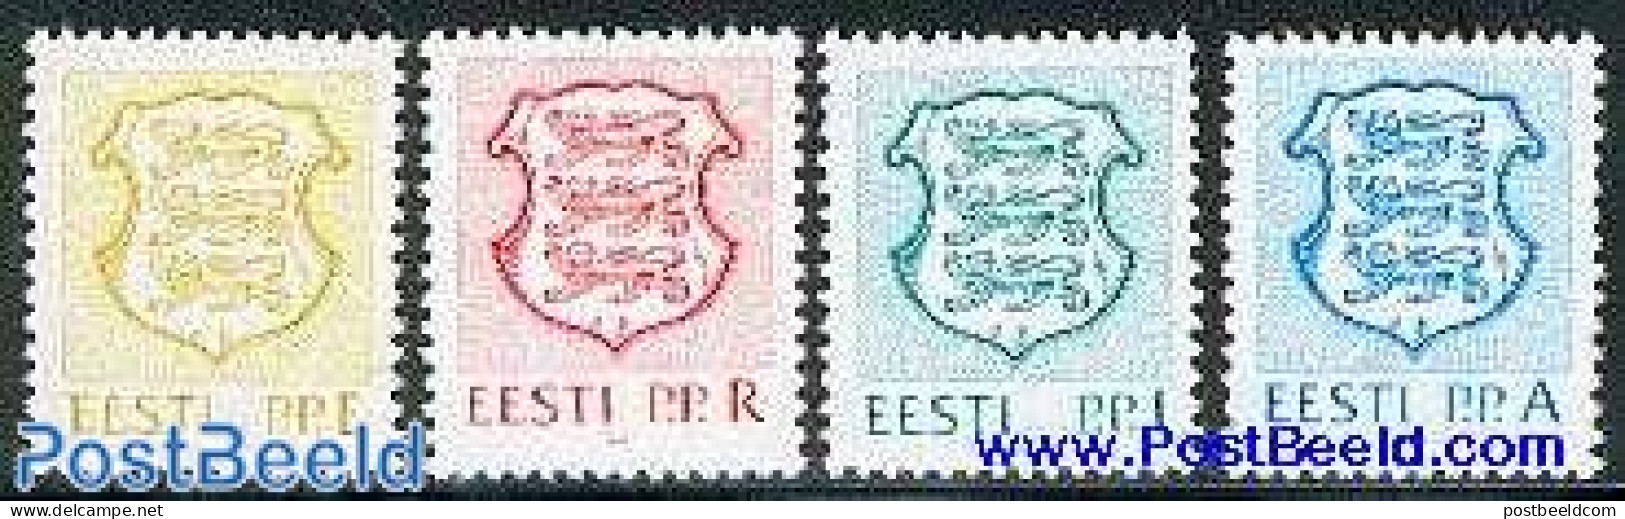 Estonia 1992 Definitives 4v, Mint NH, History - Coat Of Arms - Estonia